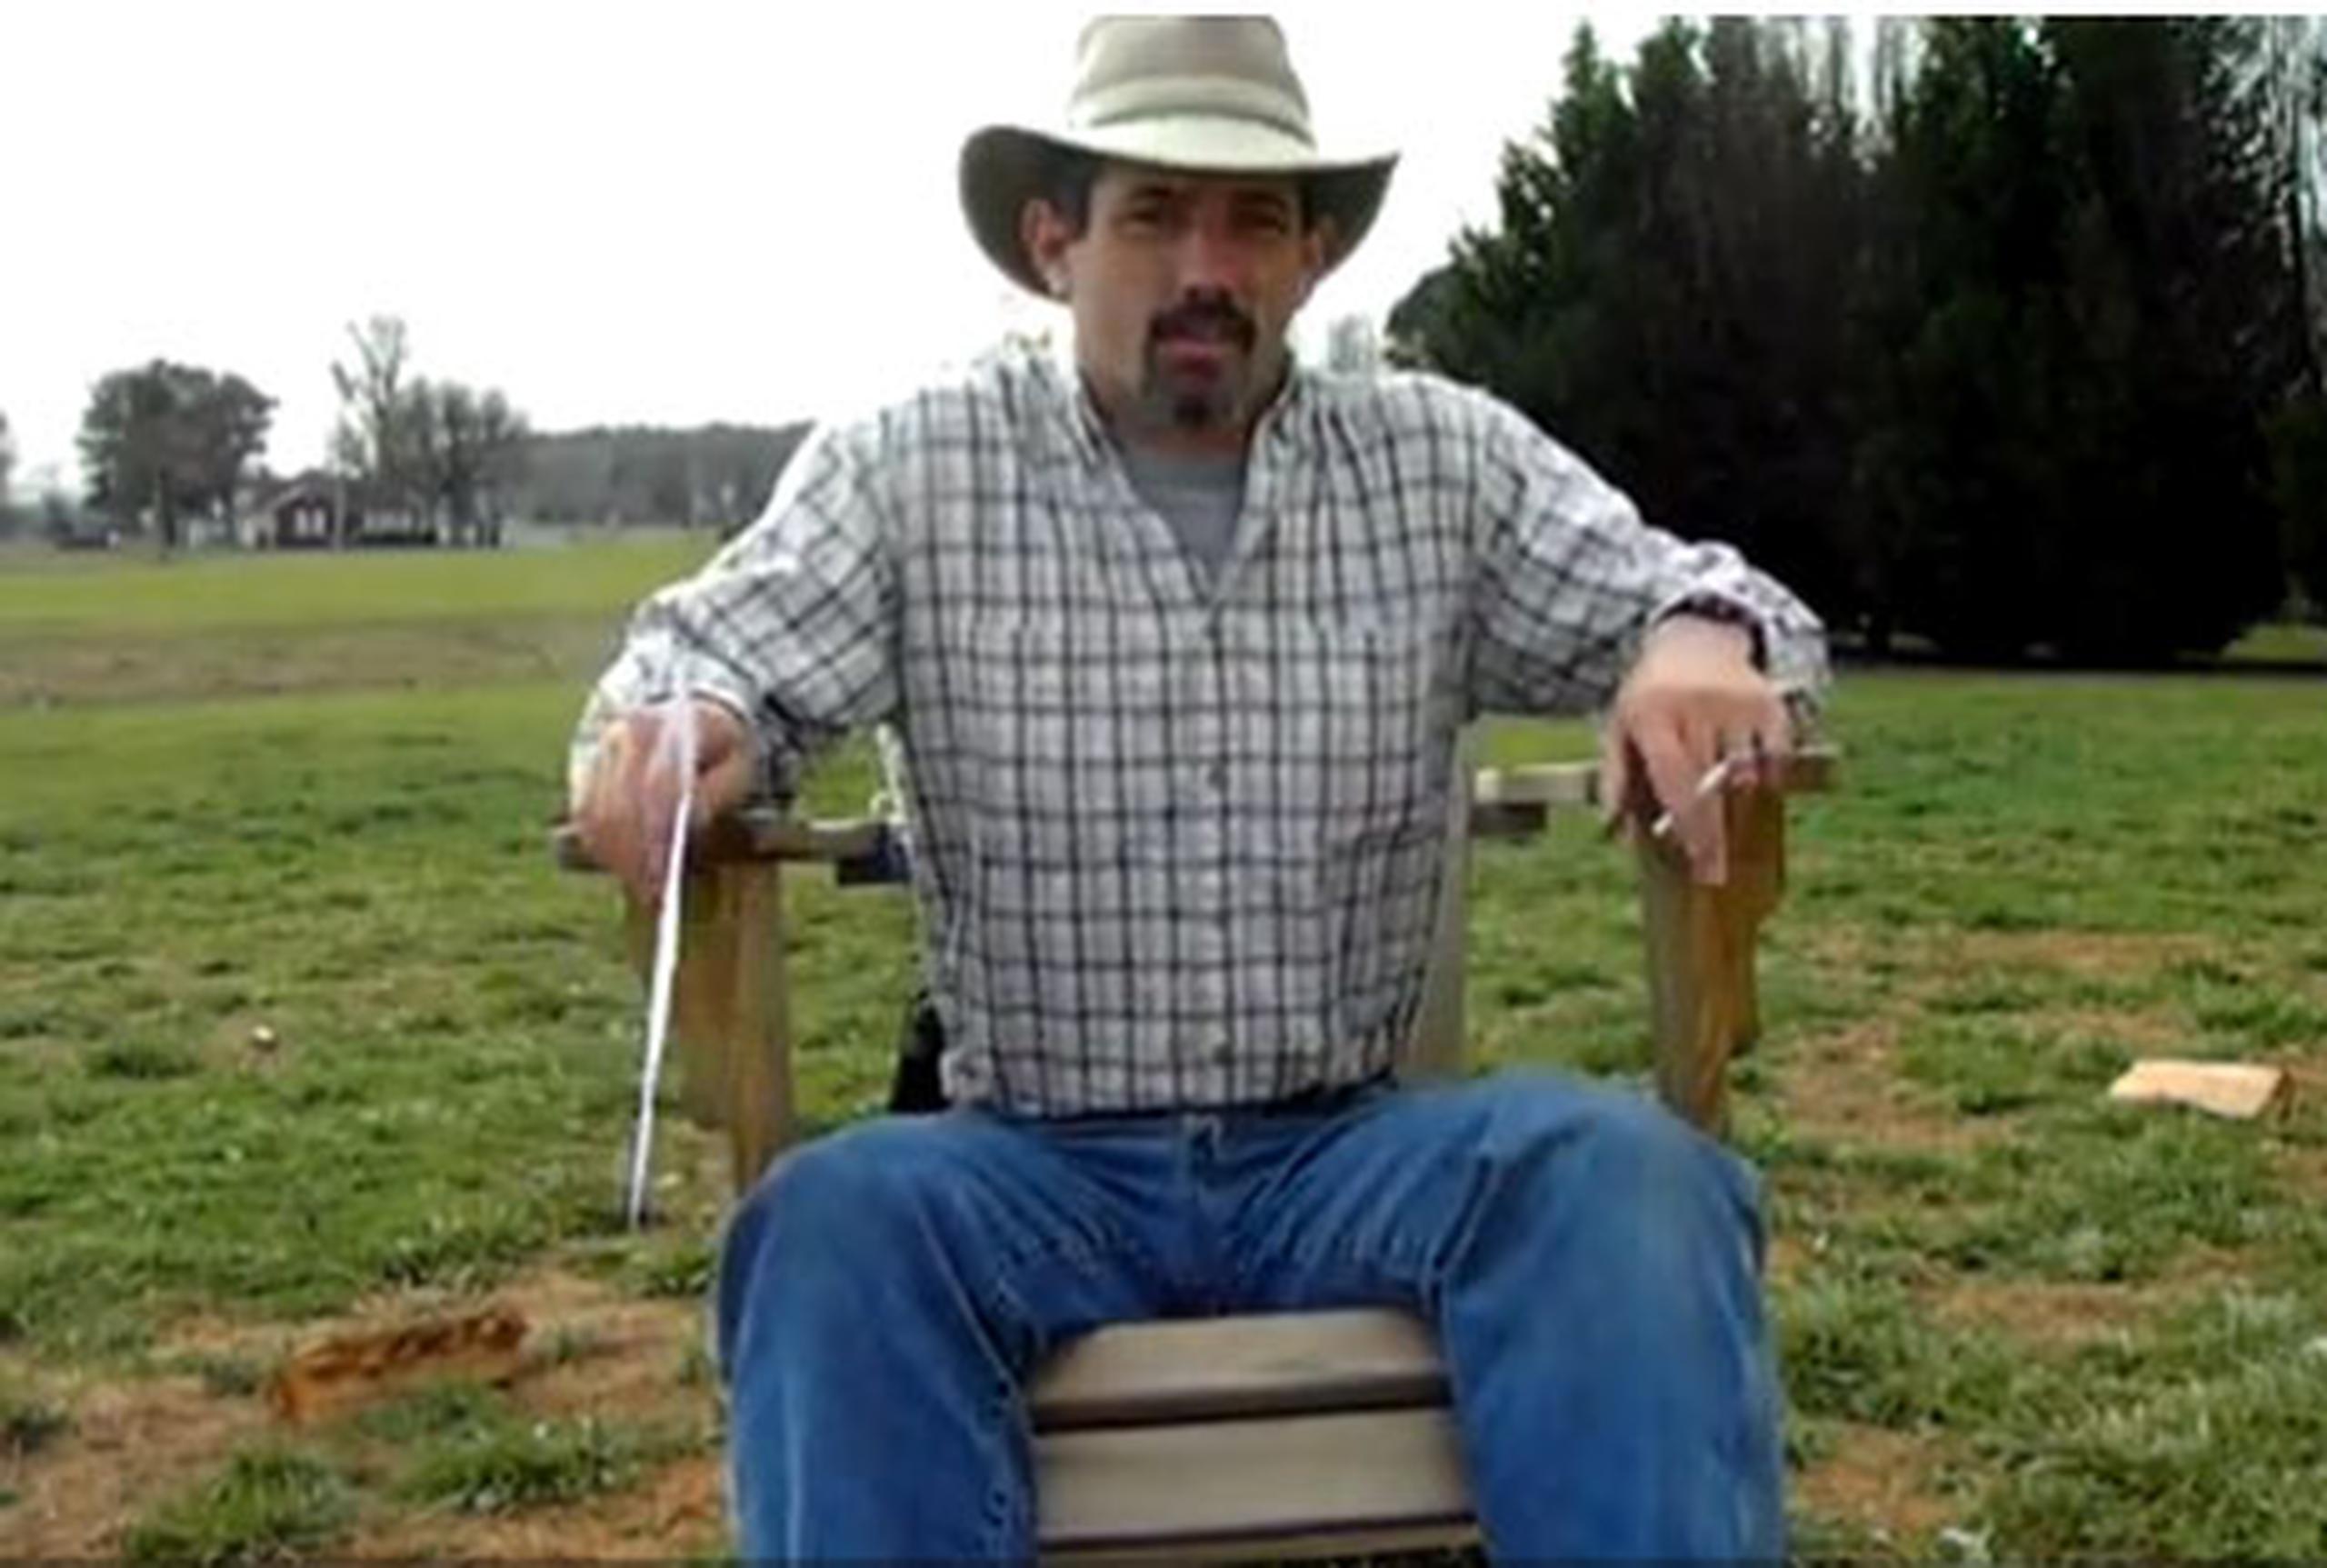 Tommy Jordan, un granjero de Texas indignado por los comentarios de su hija en Facebook, no encontró mejor forma de darle una lección que dispararle a la computadora, grabarlo en vídeo, y subirlo a YouTube.